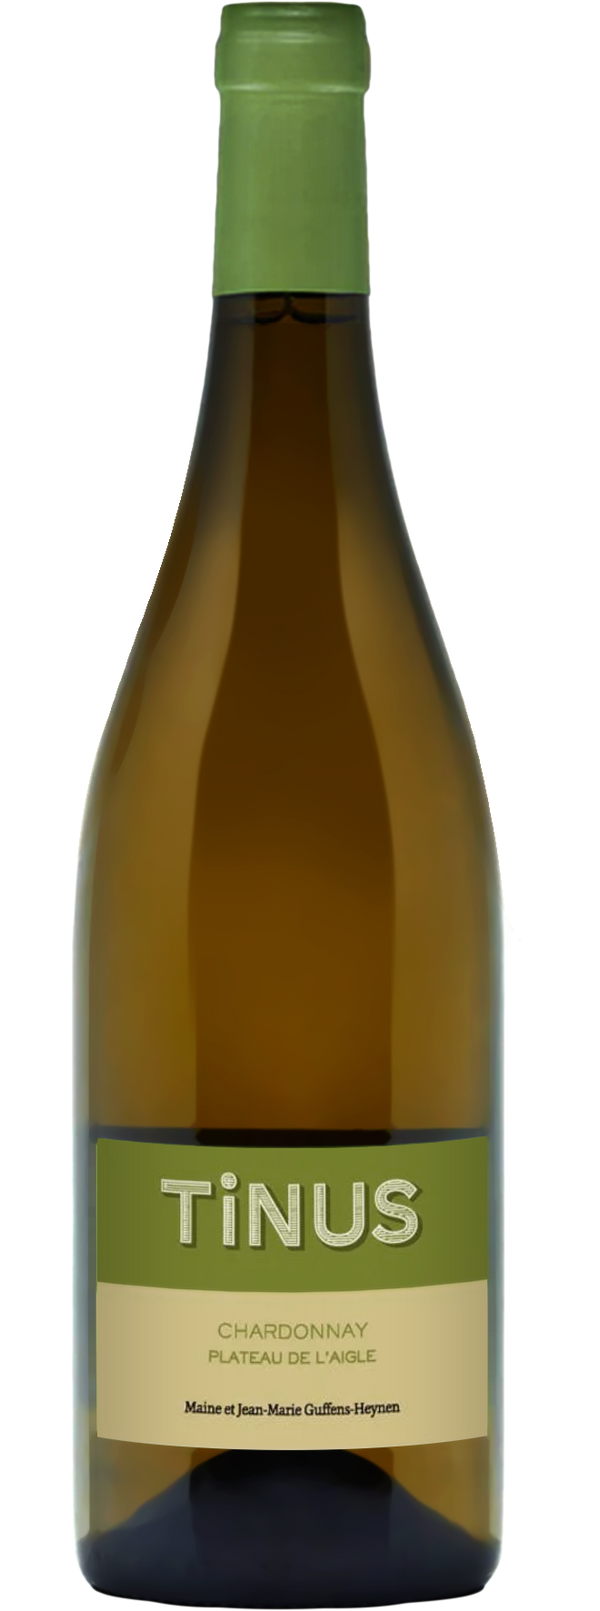 Château des Tourettes Vin de France Tinus Chardonnay 2017